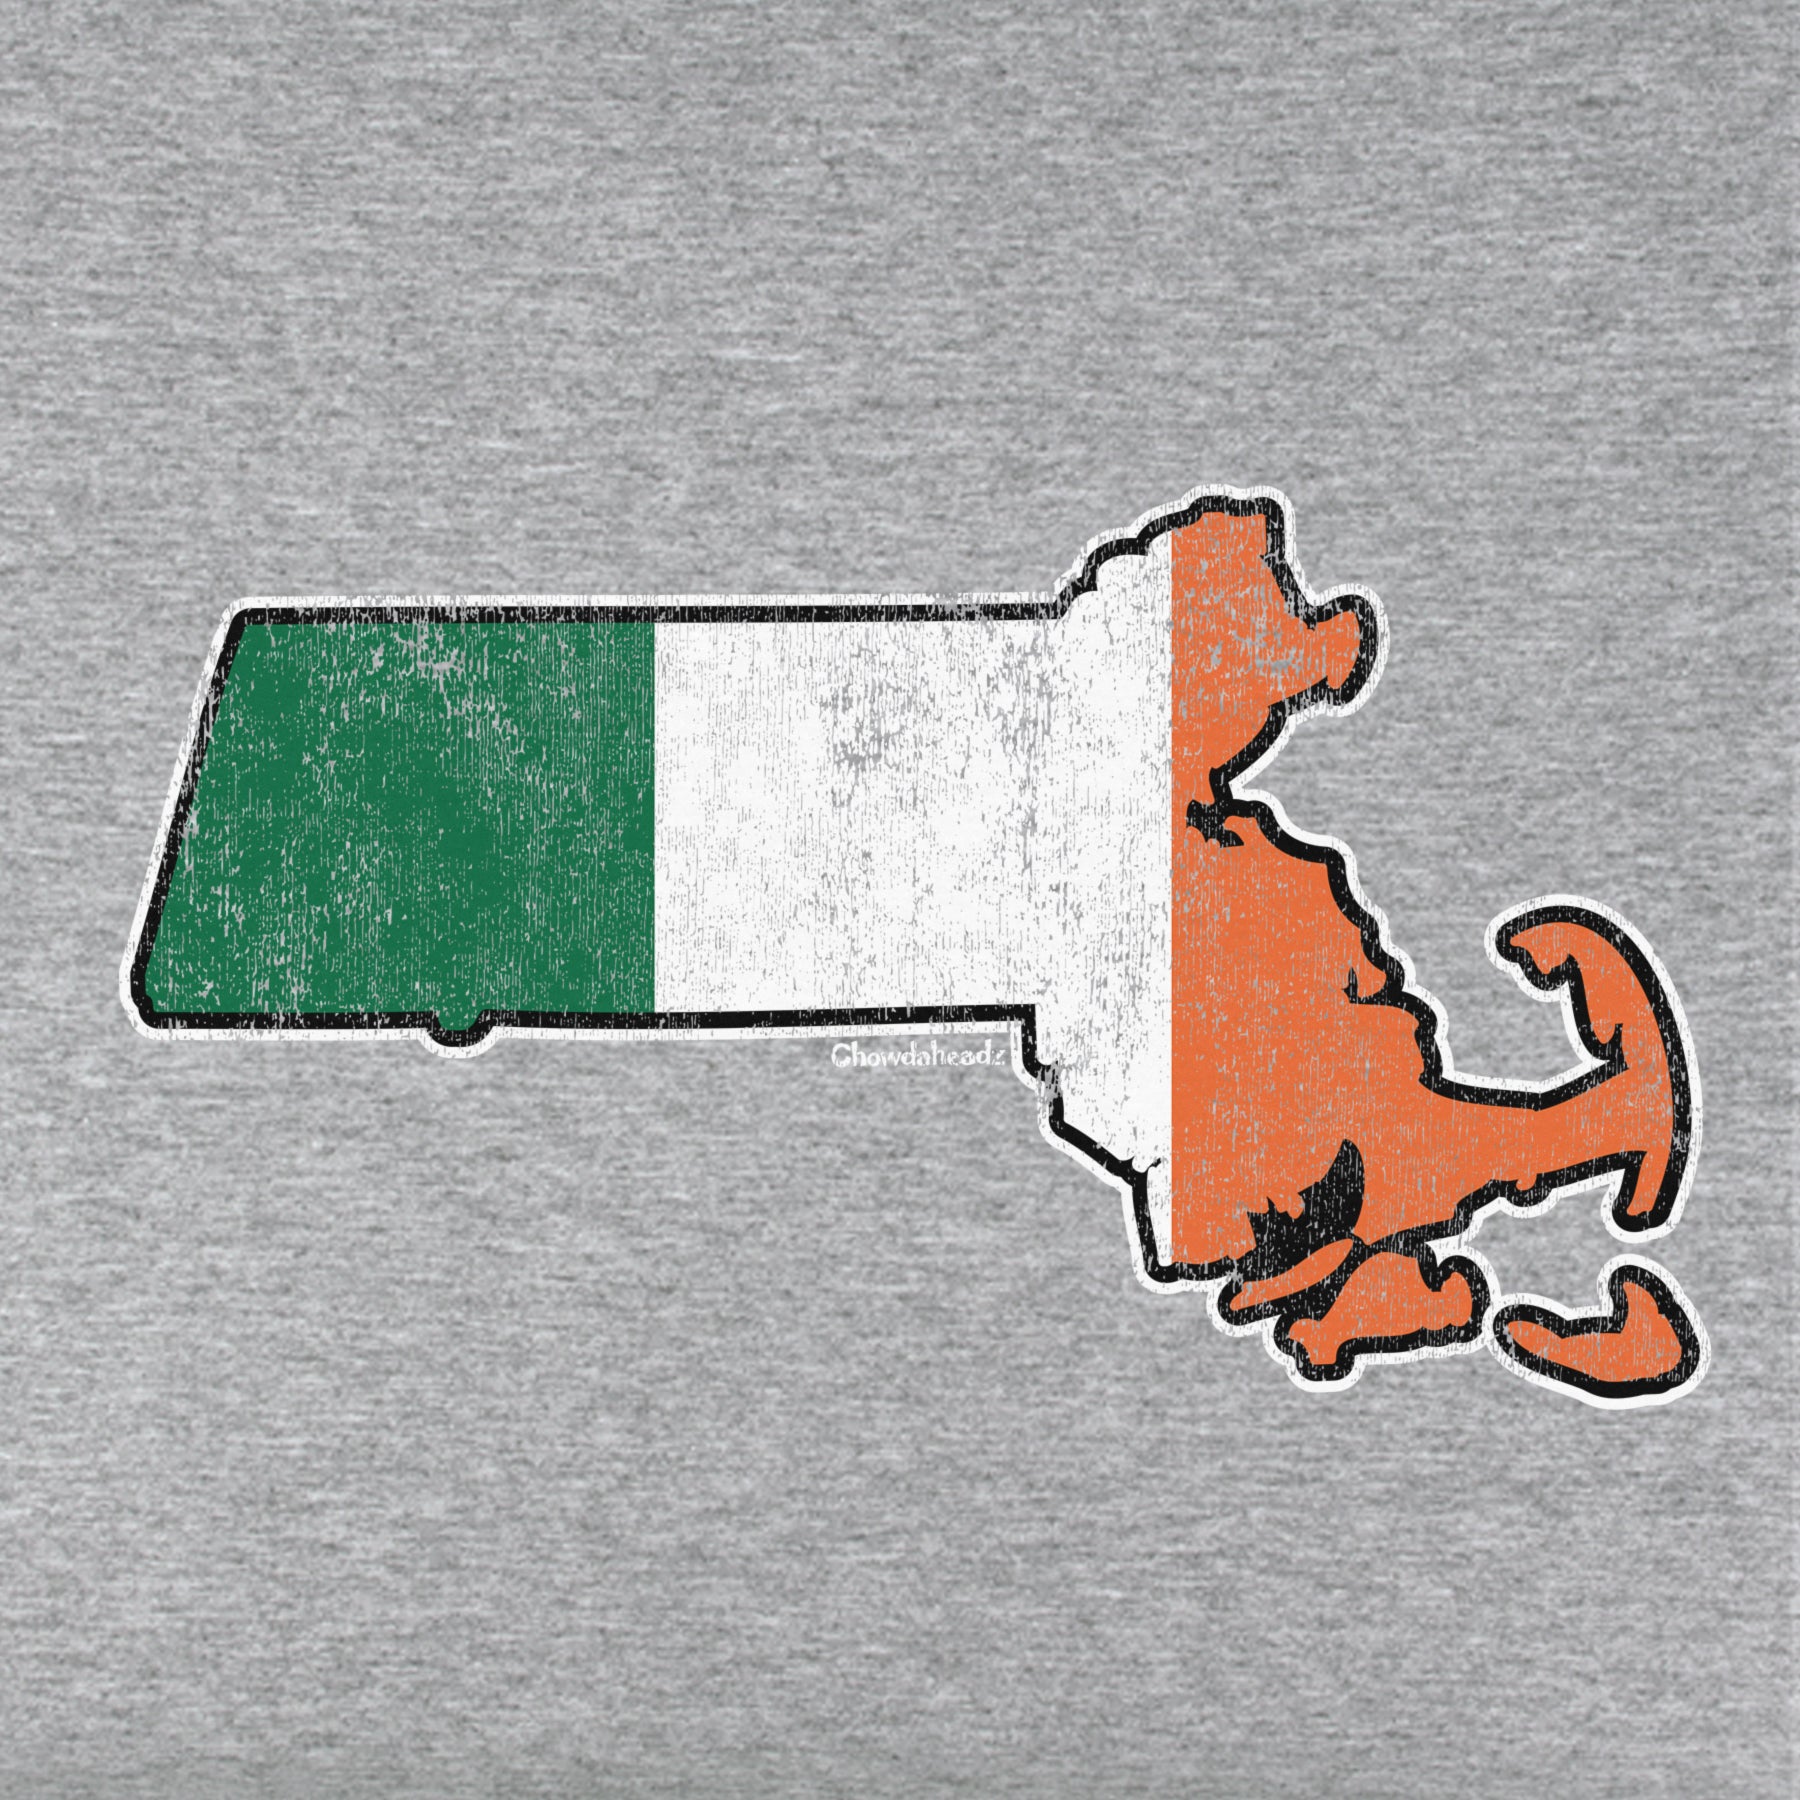 Irish Massachusetts Youth Hoodie - Chowdaheadz